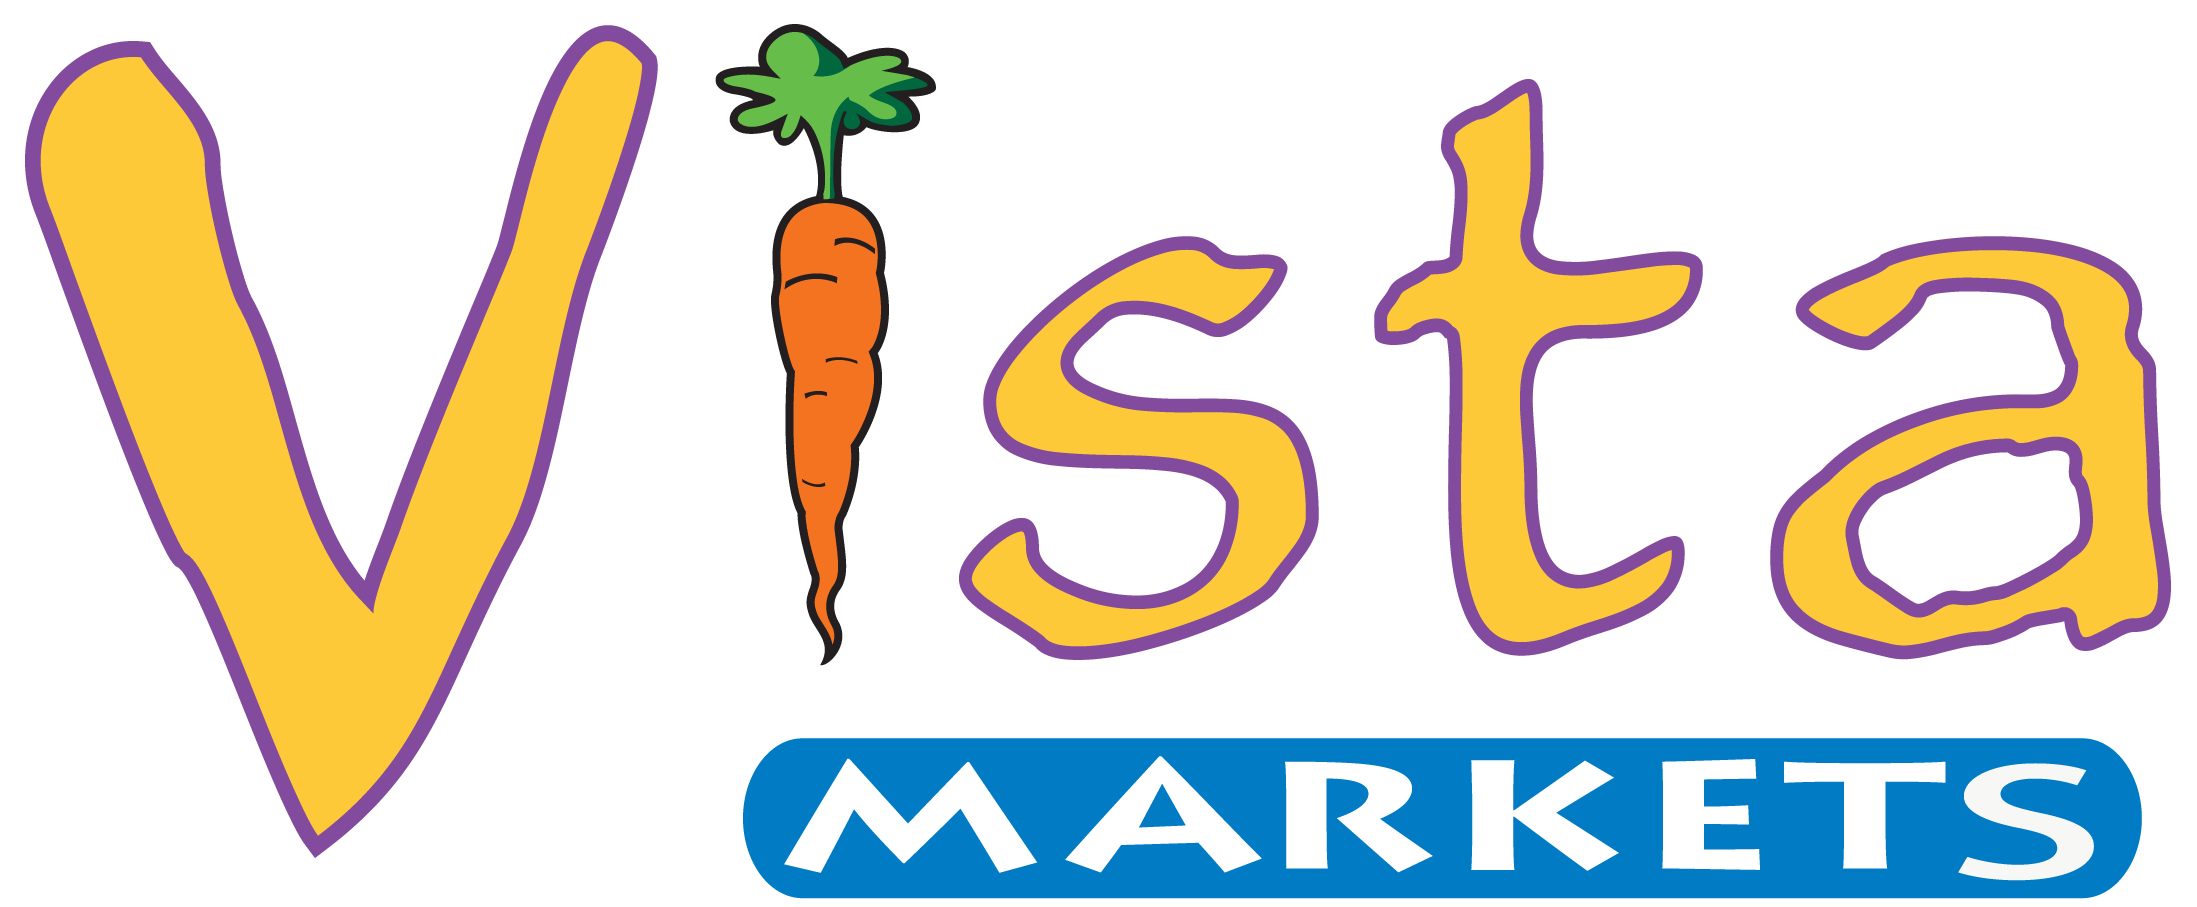 Vista Markets Logo